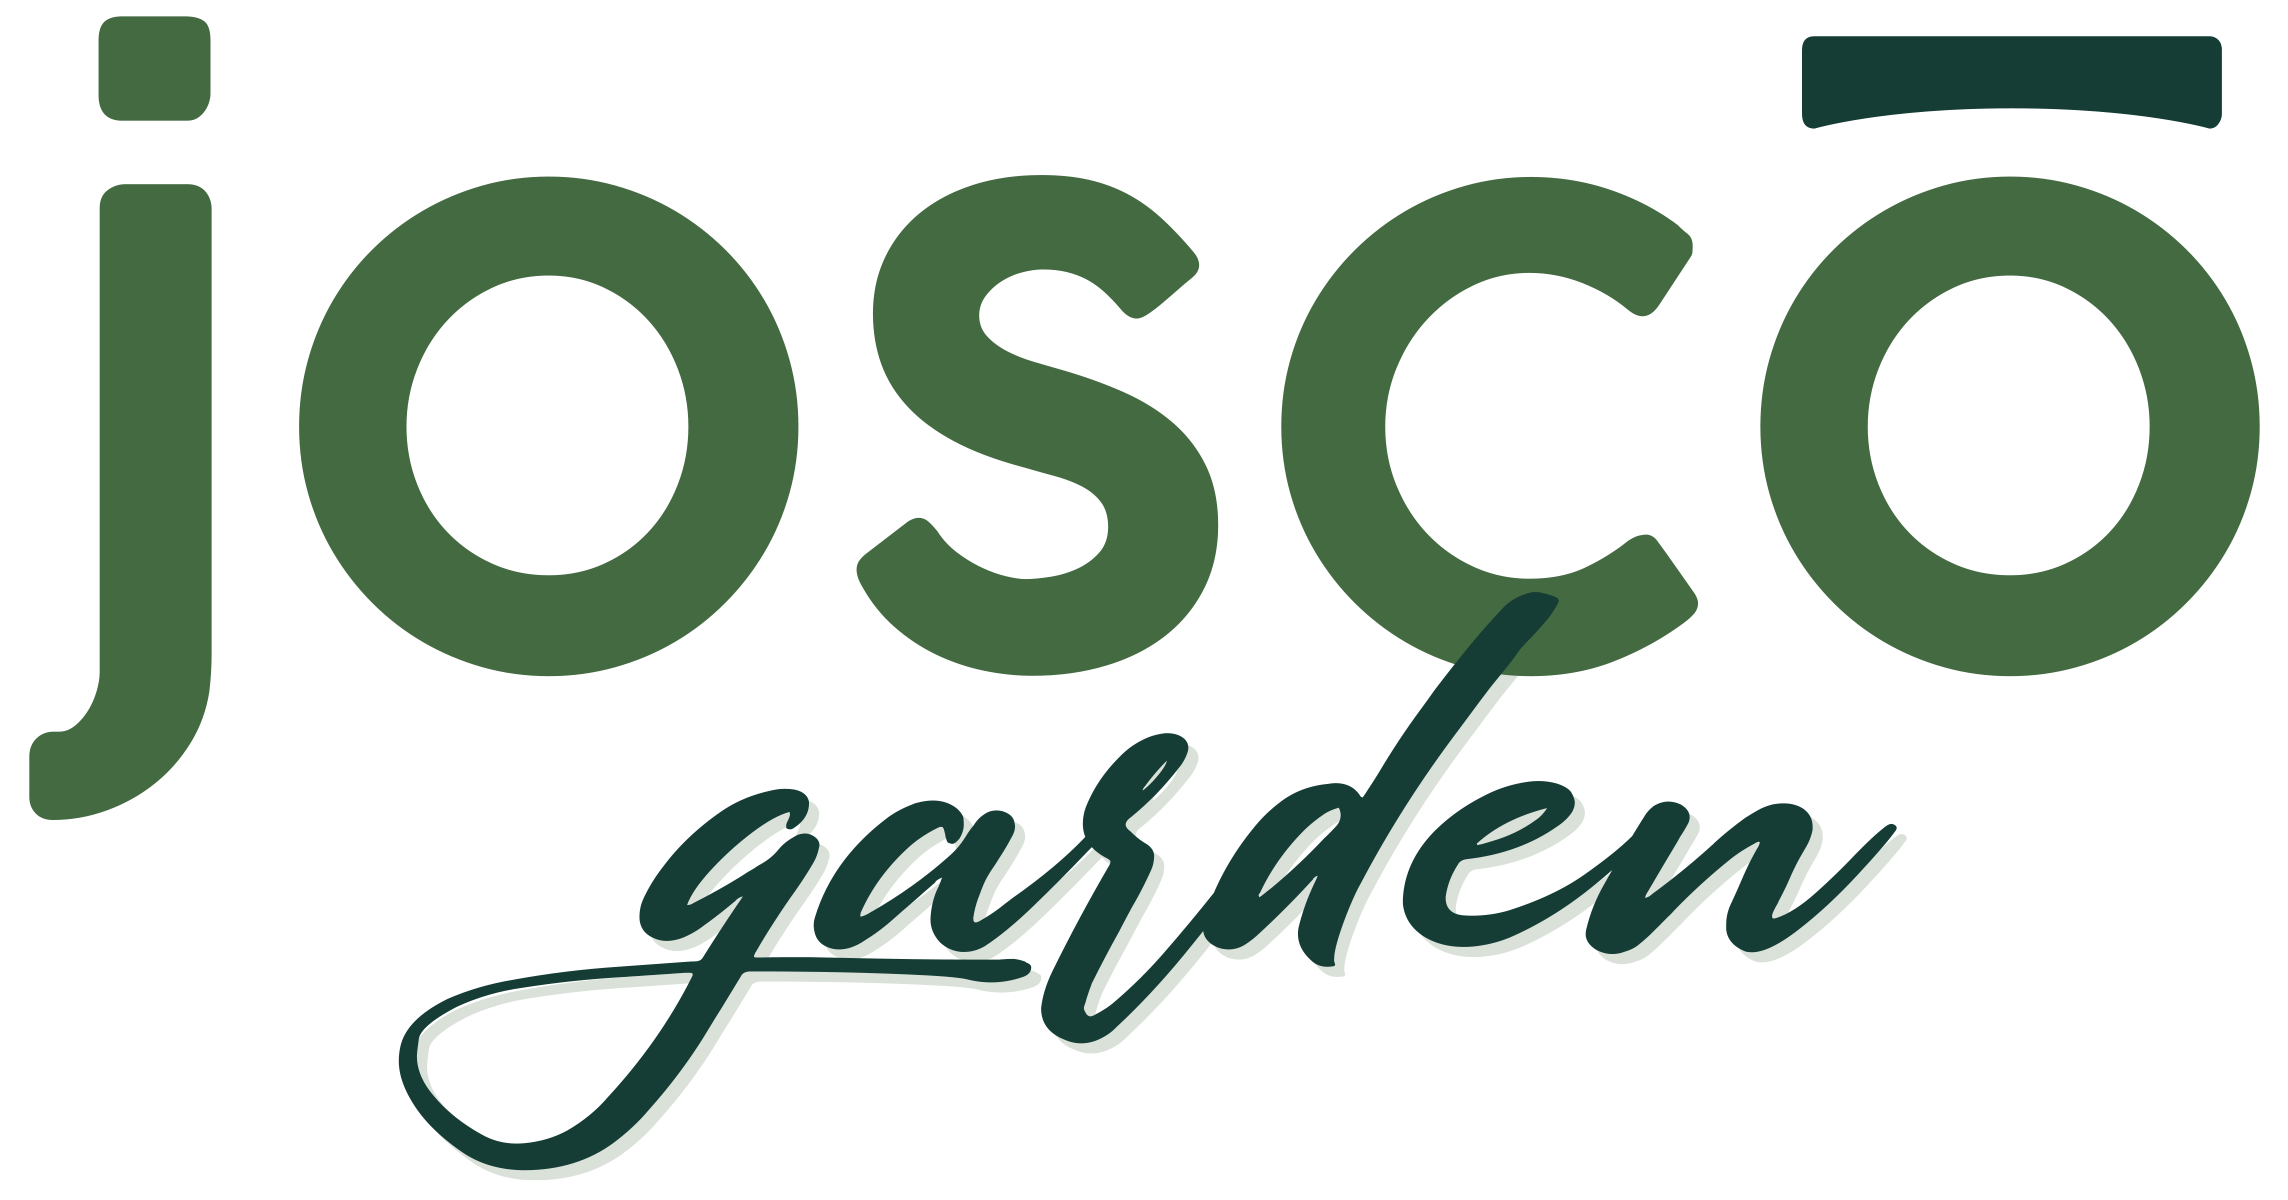 Josco Garden logo